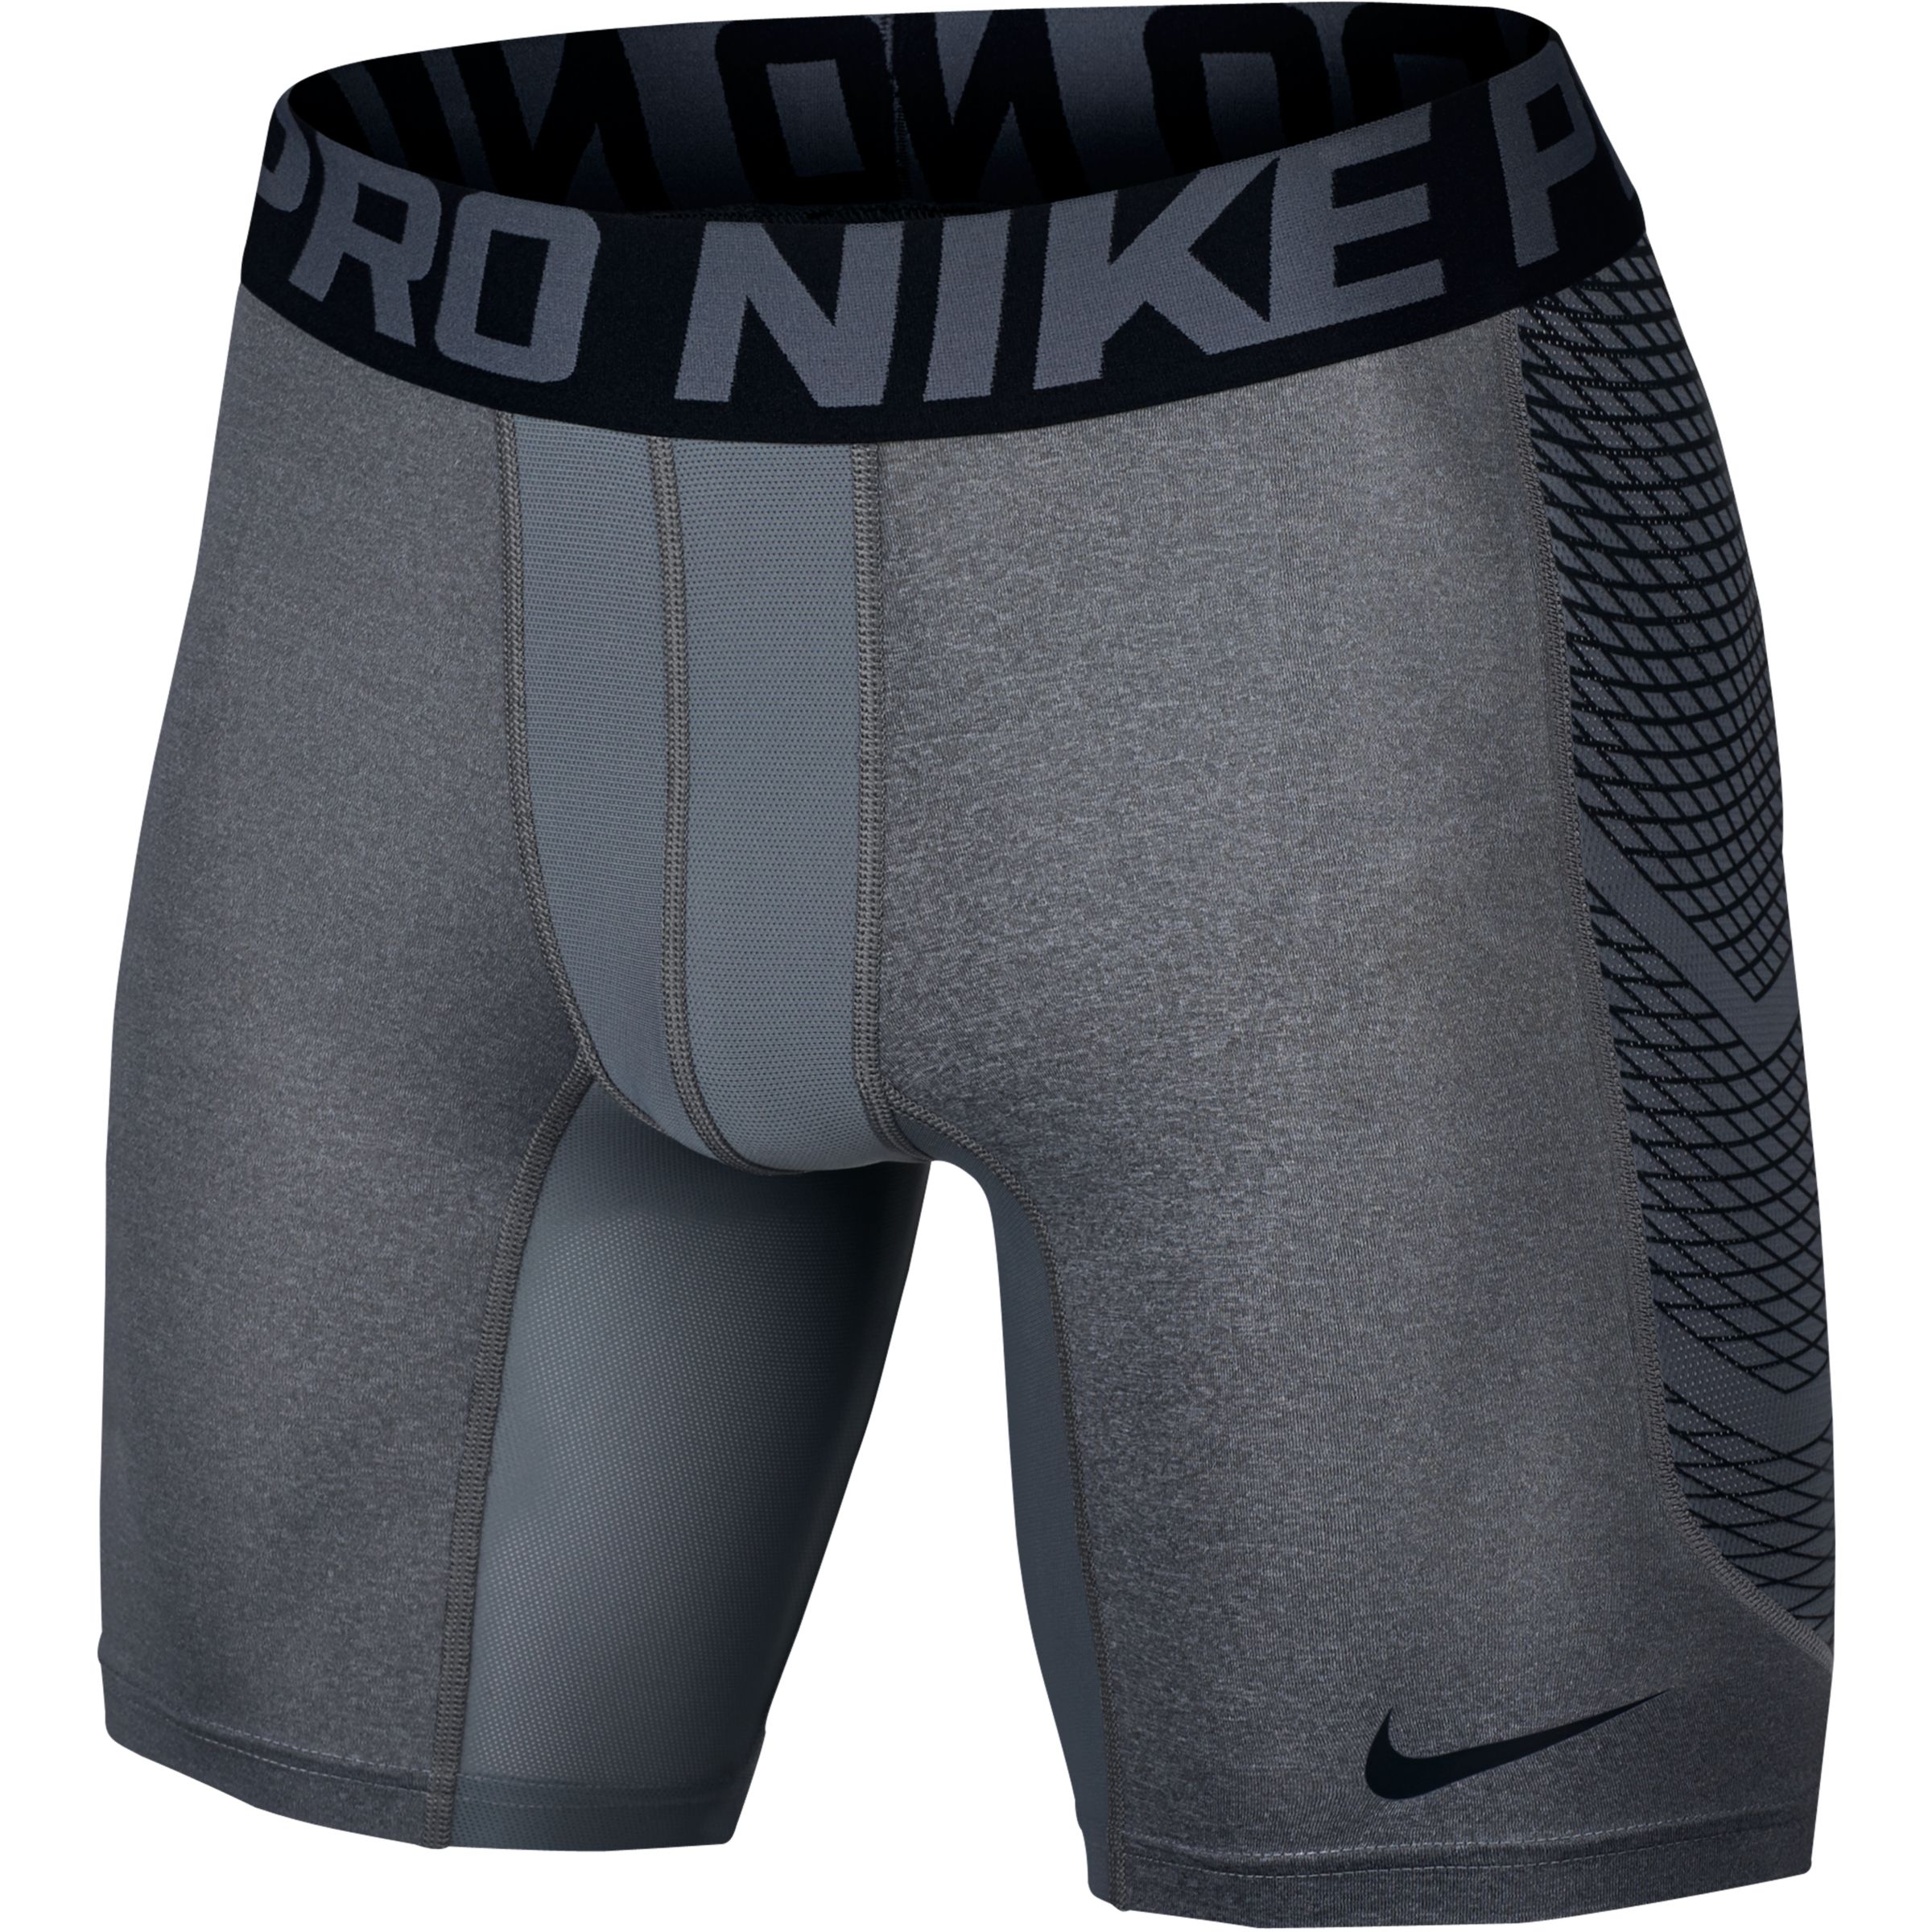 Купить компрессионные шорты. Nike Pro Hypercool Compression. Nike Pro Combat шорты. Компрессионные шорты Nike Pro Combat. Nike Pro Combat Compression шорты мужские.